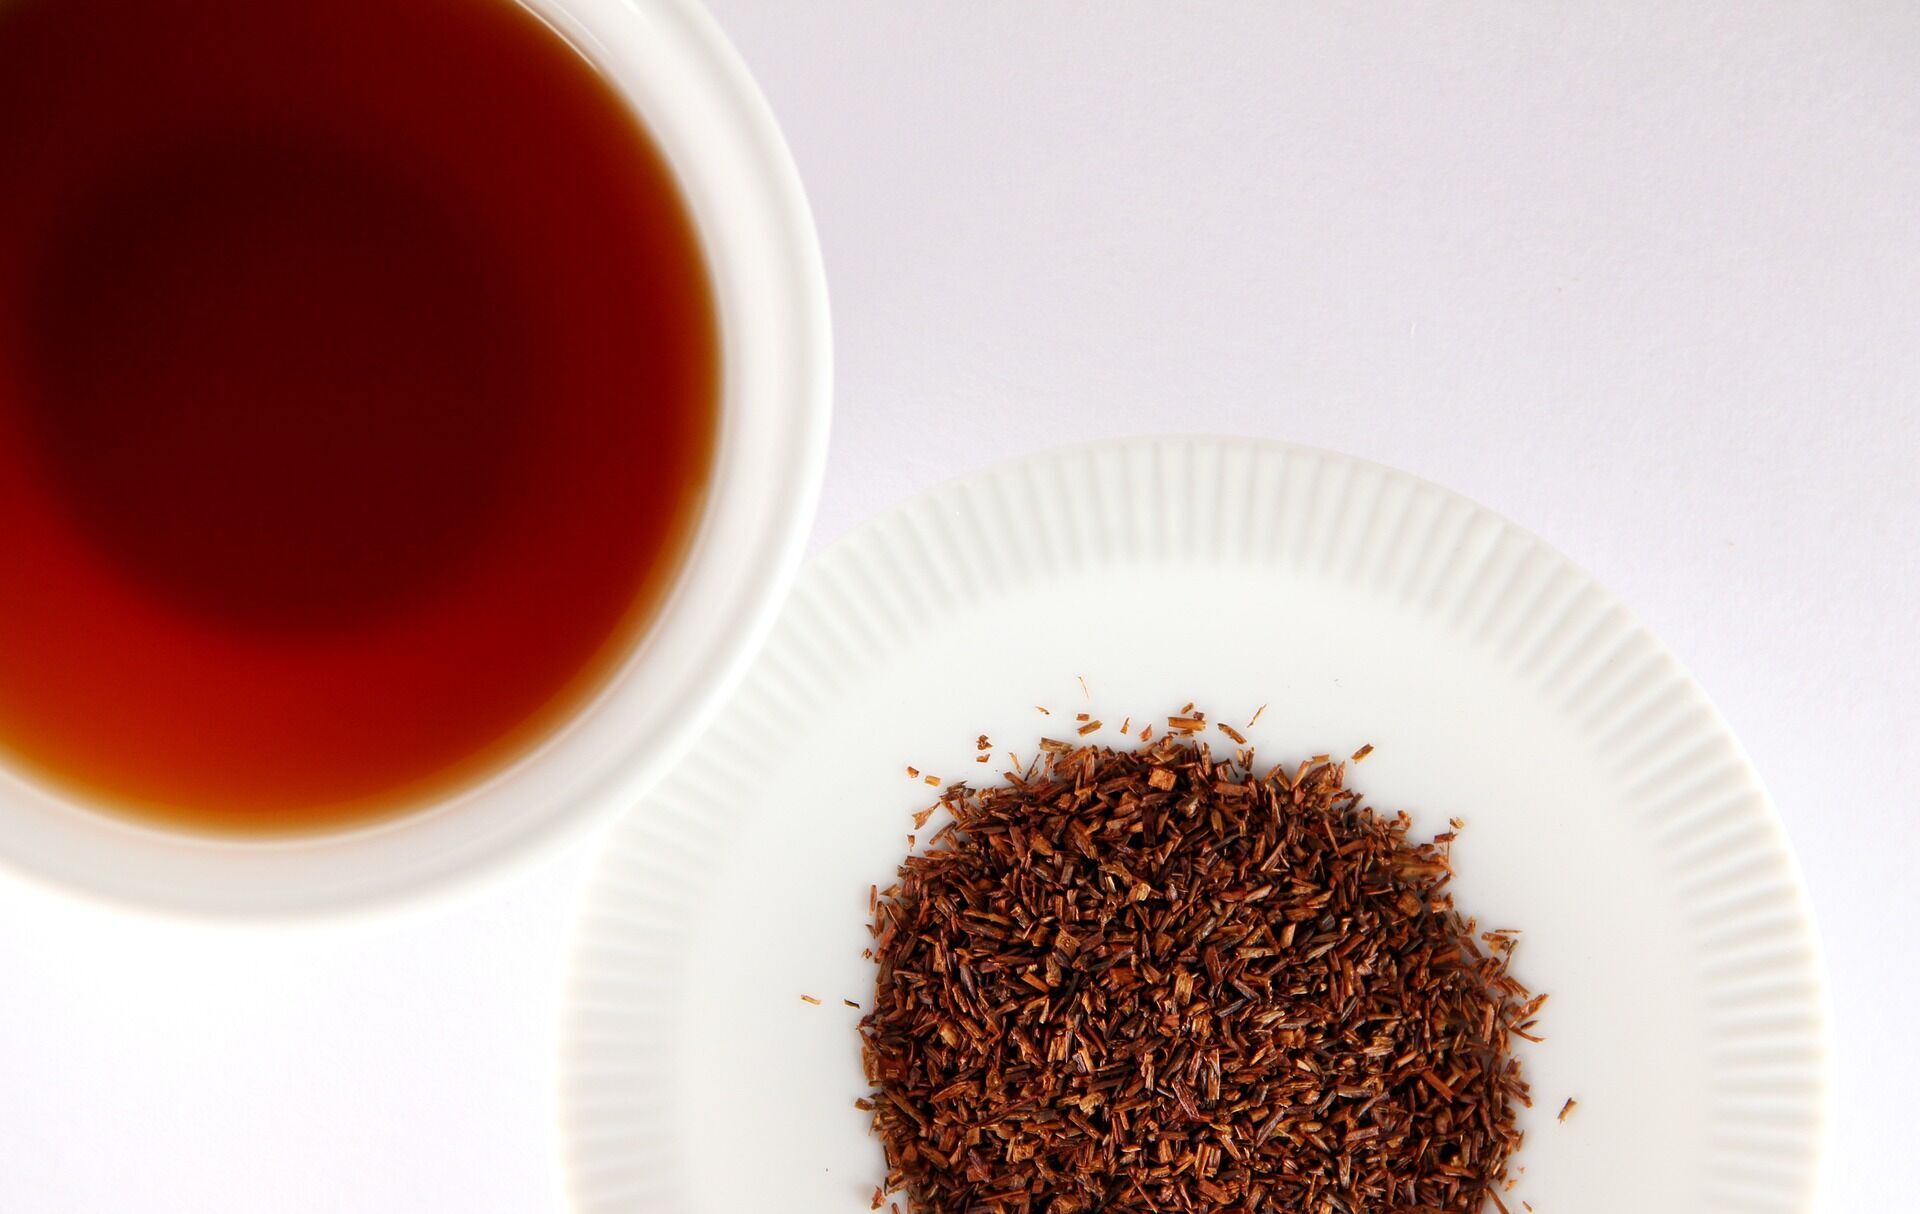 Червоний чай ройбуш здатний виводити з організму щавлеву кислоту